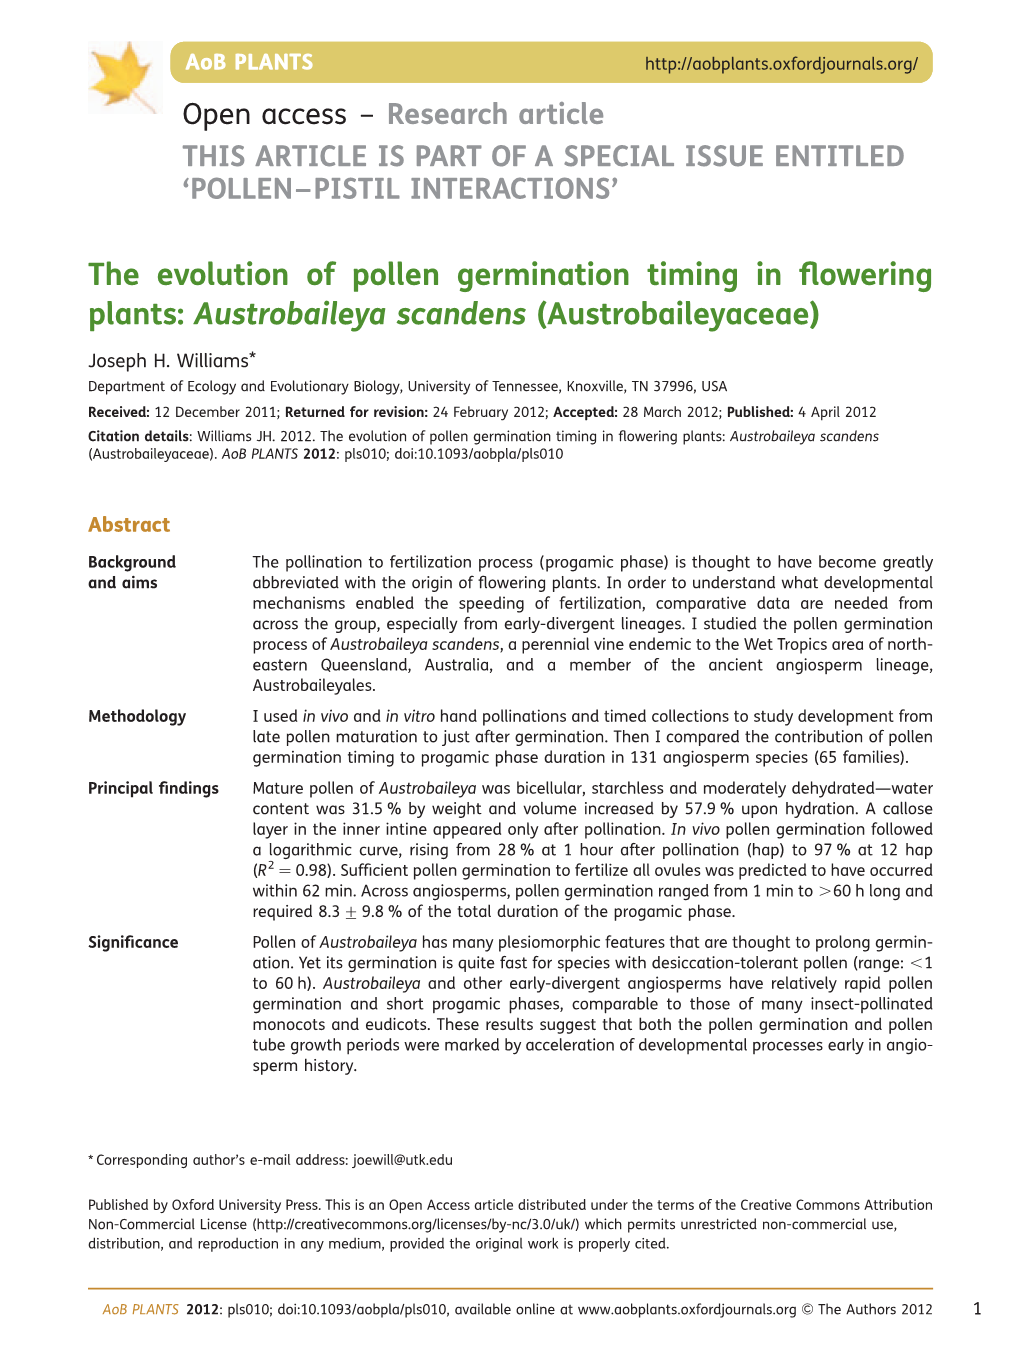 The Evolution of Pollen Germination Timing in ﬂowering Plants: Austrobaileya Scandens (Austrobaileyaceae)